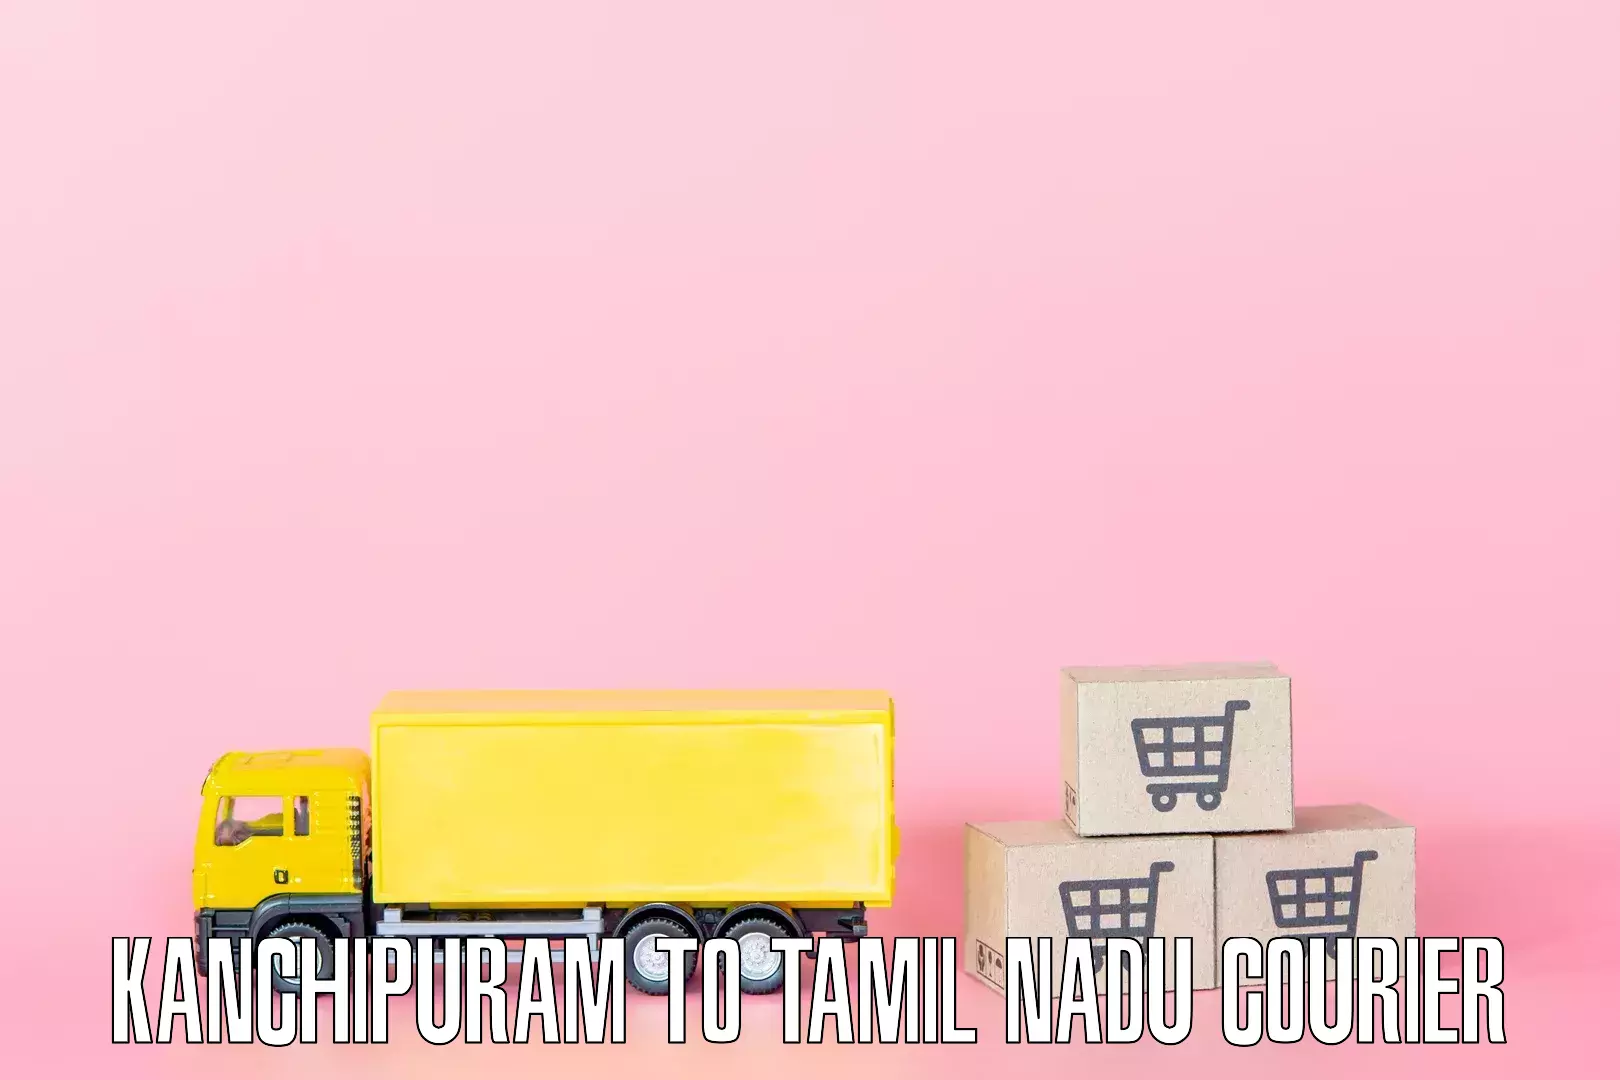 Home moving experts Kanchipuram to Tiruppur